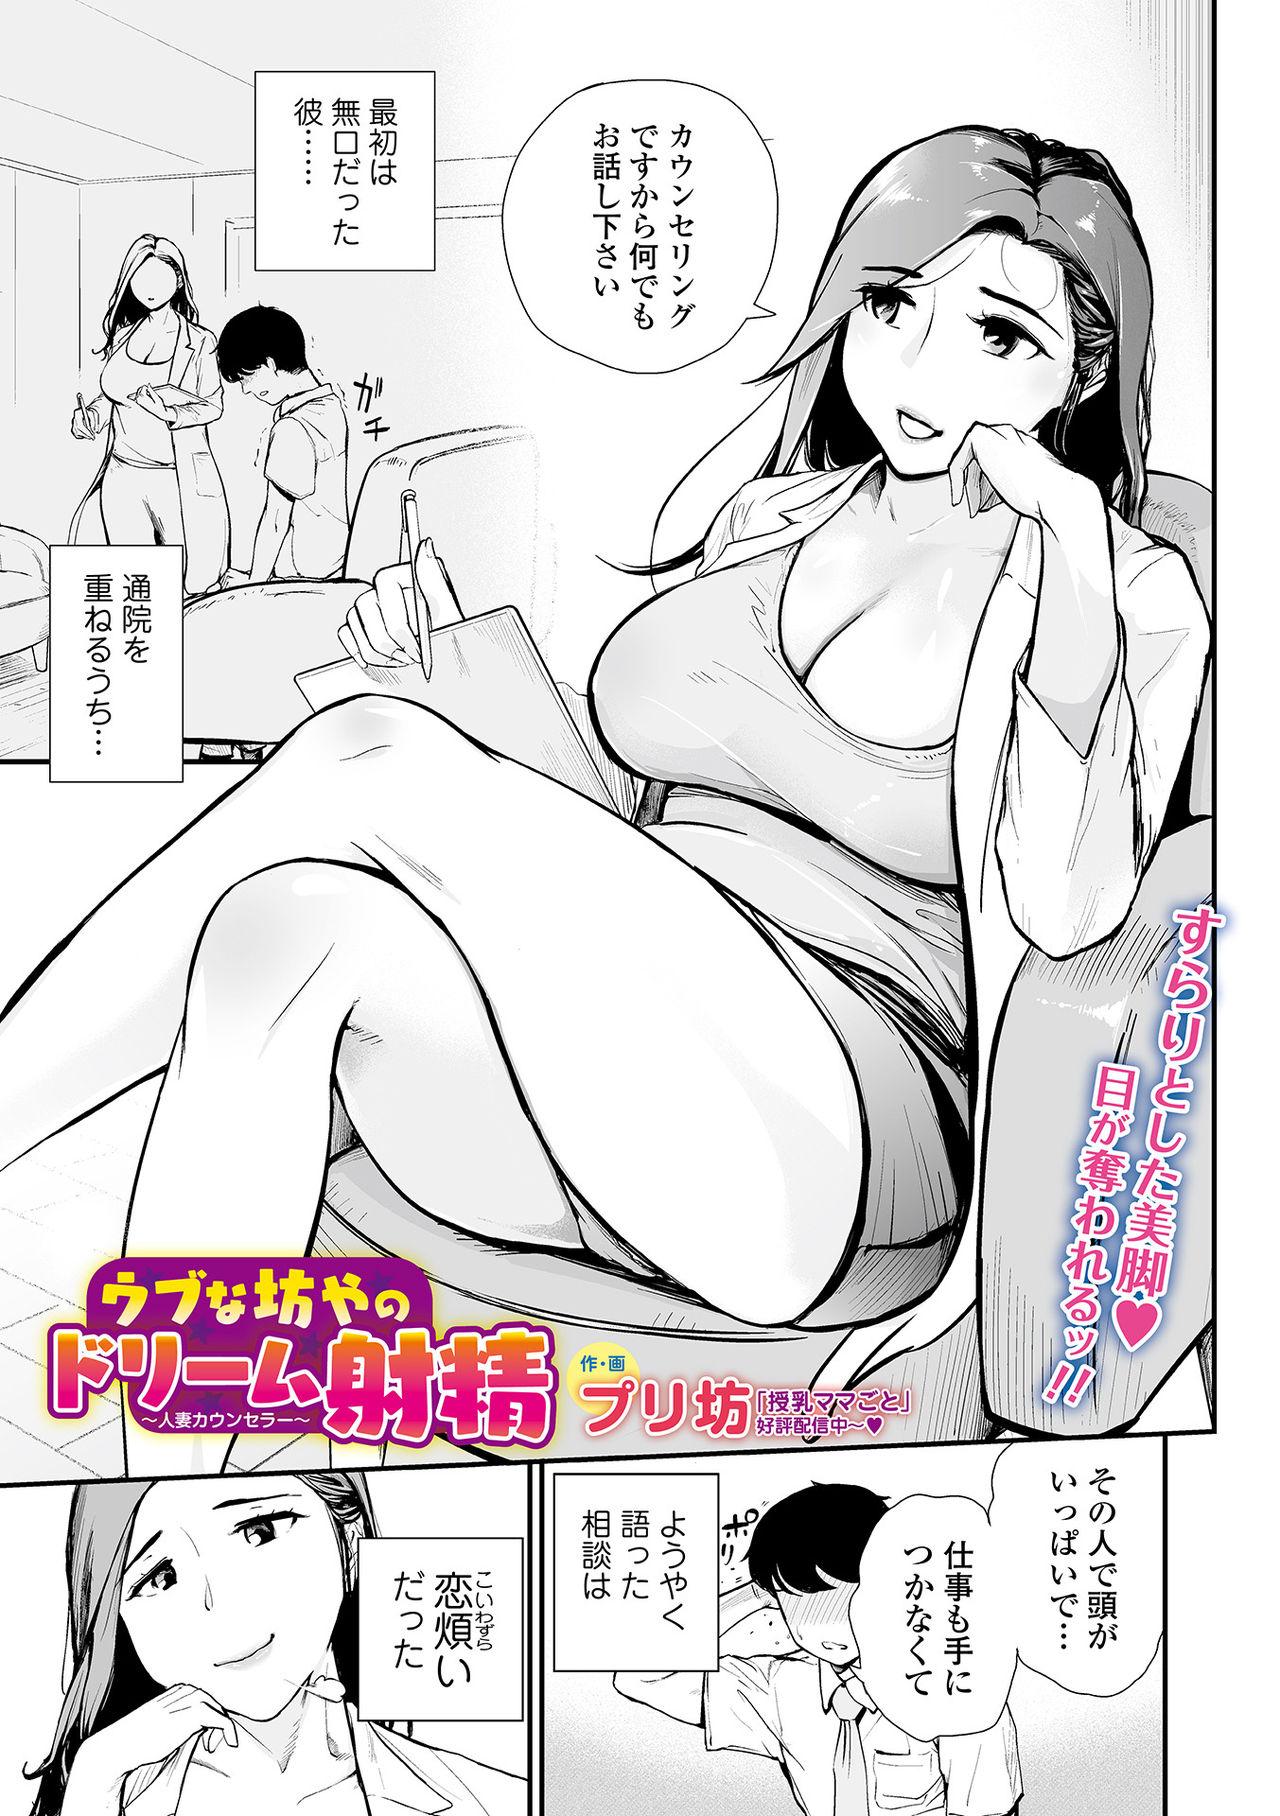 Web Comic Toutetsu Vol. 66 62